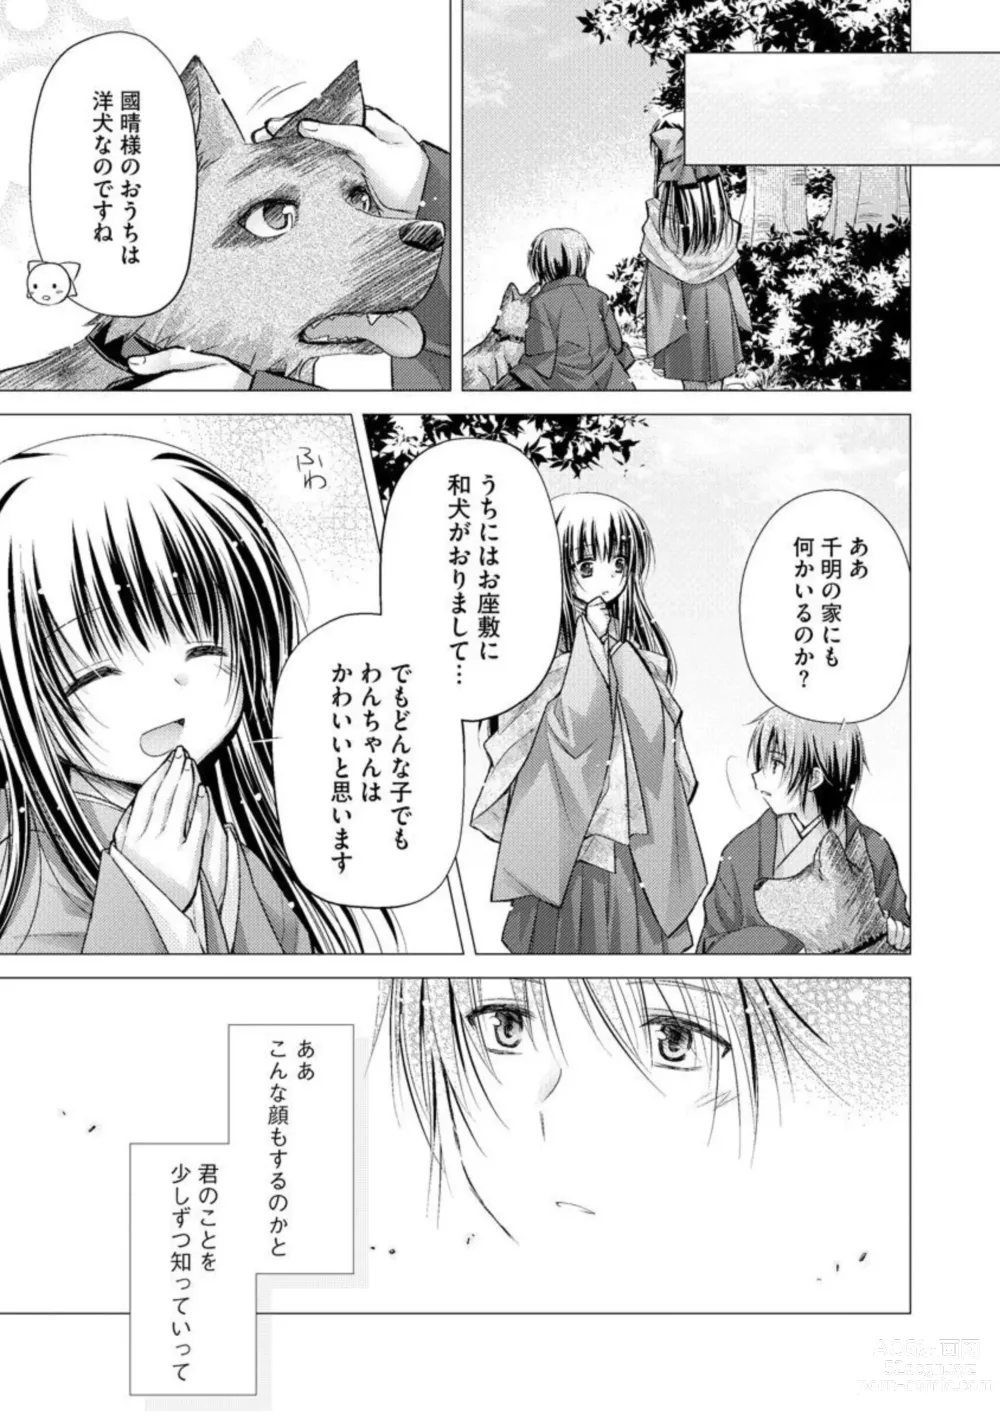 Page 9 of manga Aishin Retoroshizumu 1